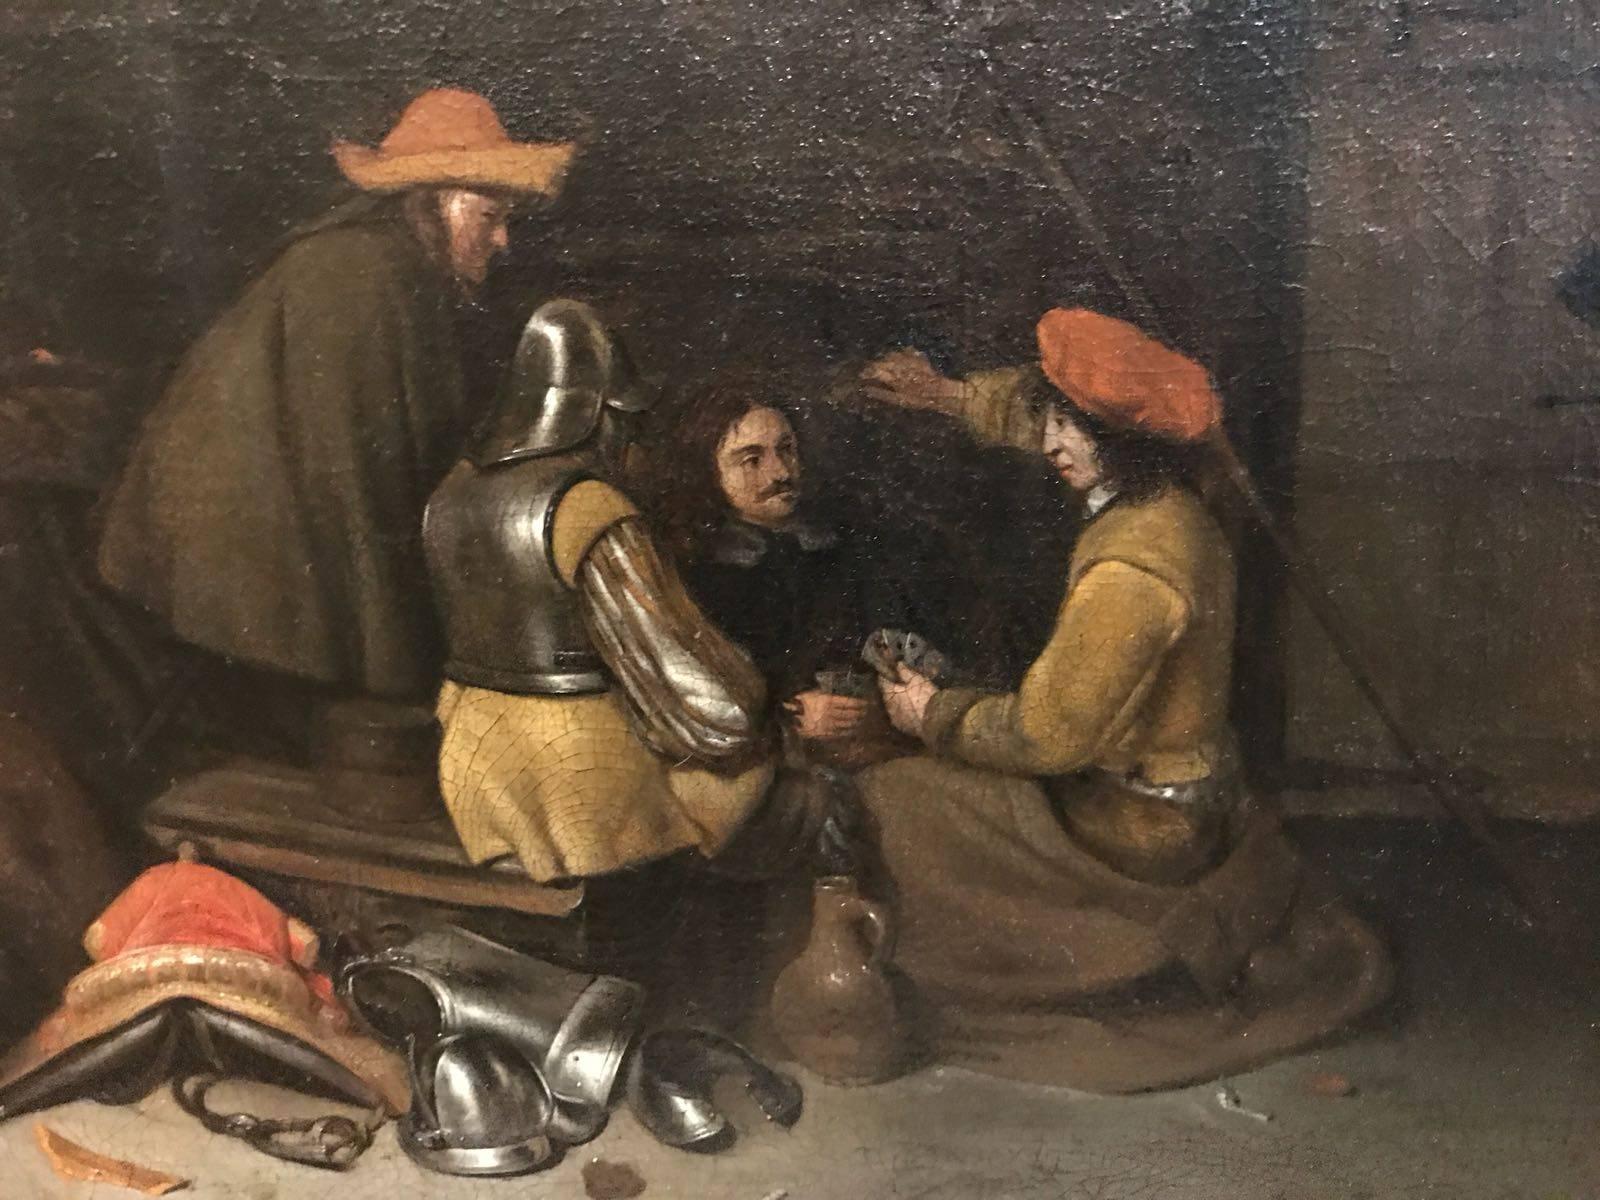 Peinture à l'huile néerlandaise du XVIIe siècle - Le jeu aux cartes par Ter Borch - Painting de Gerard ter Borch the Younger